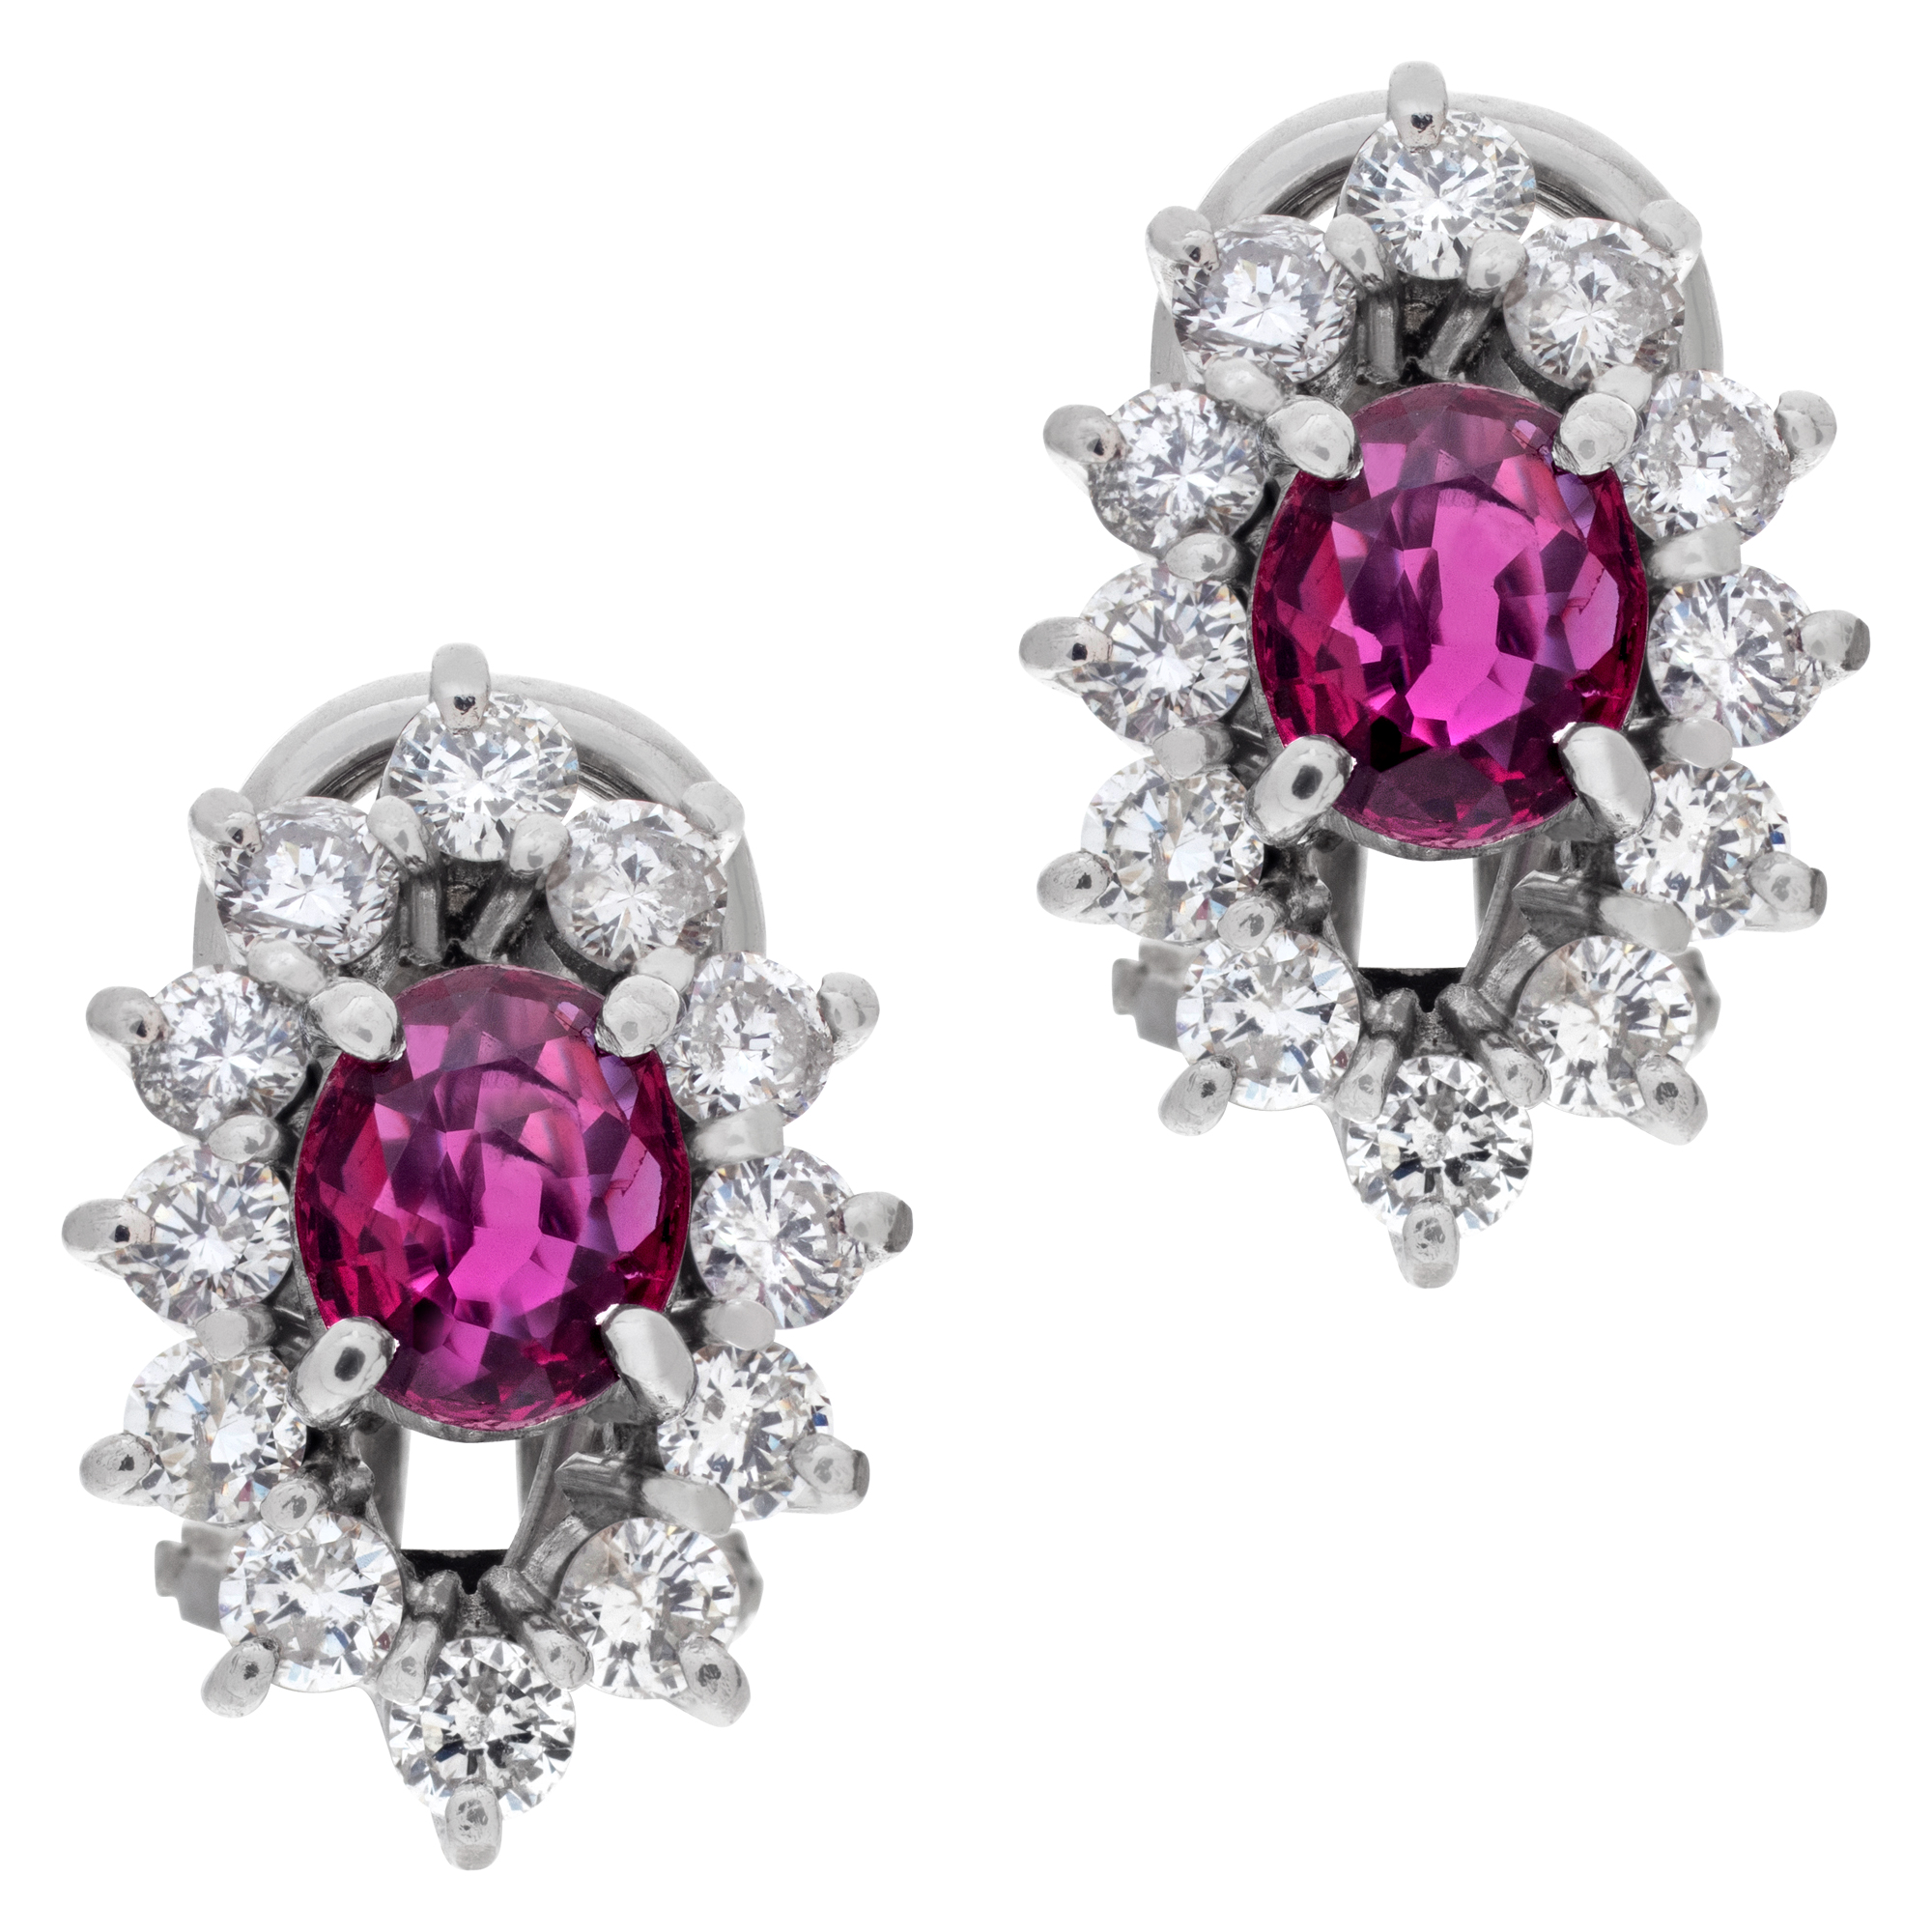 Ruby & diamond earrings set in 14k white gold. image 1